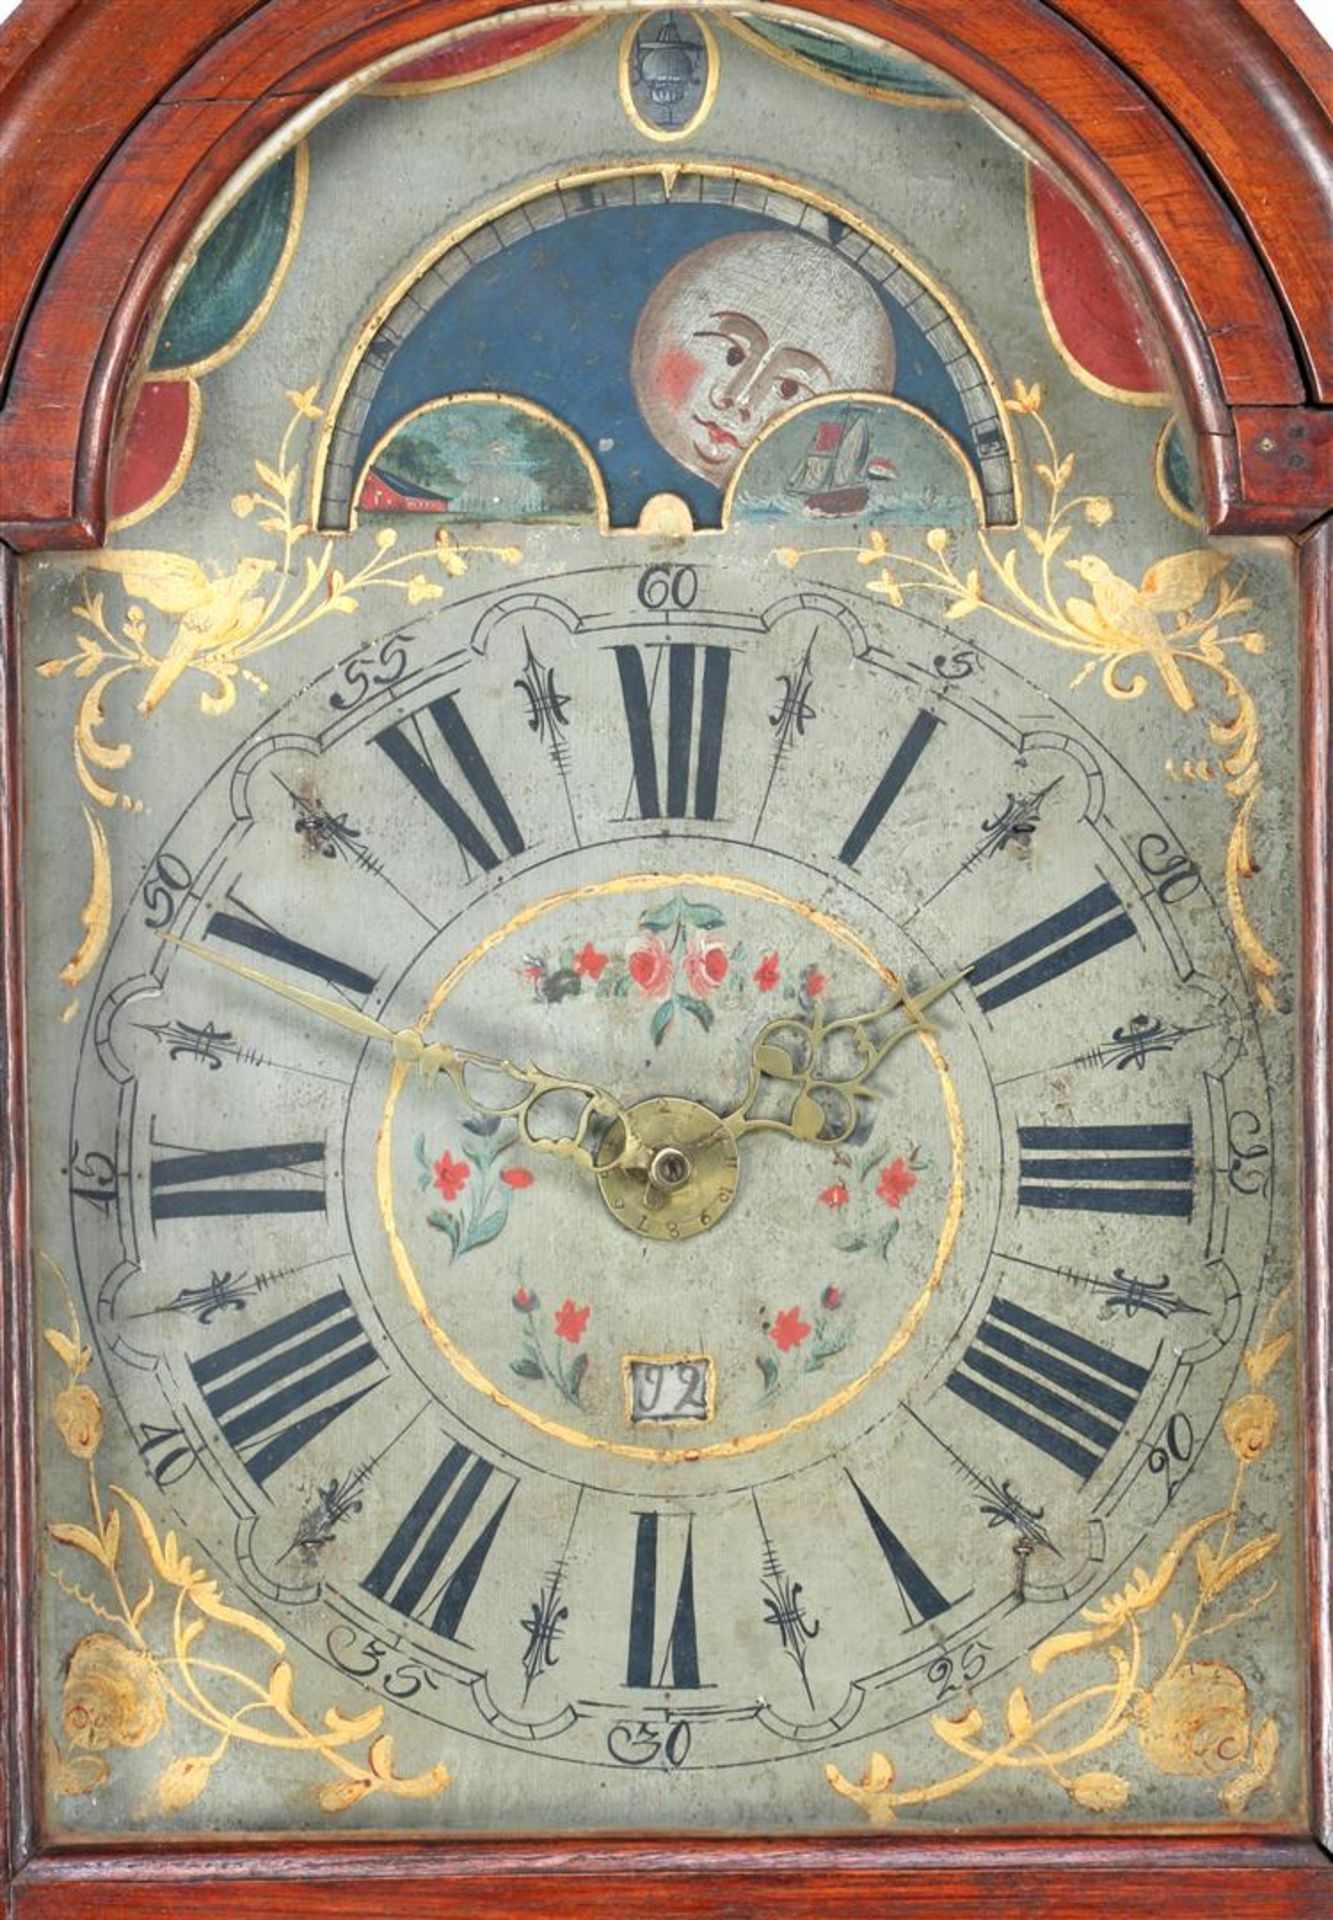 Frisian sraart clock - Image 2 of 2